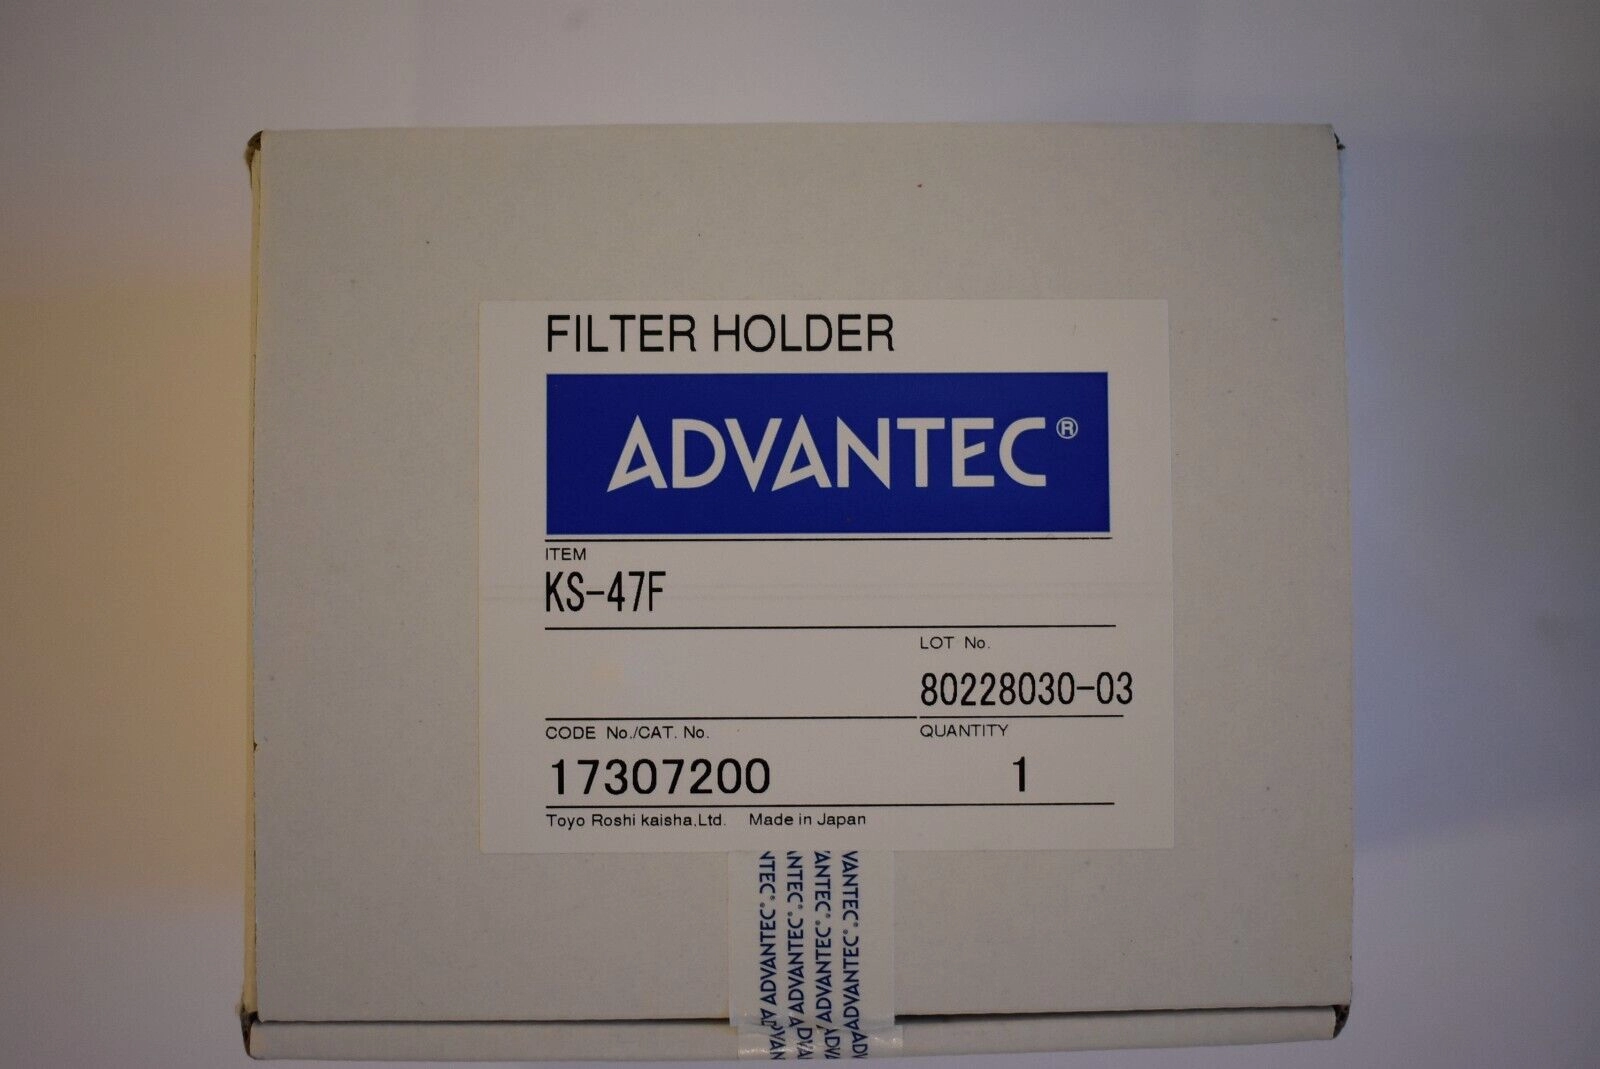 ADVANTEC KS-47F 17307200 Filter Holder